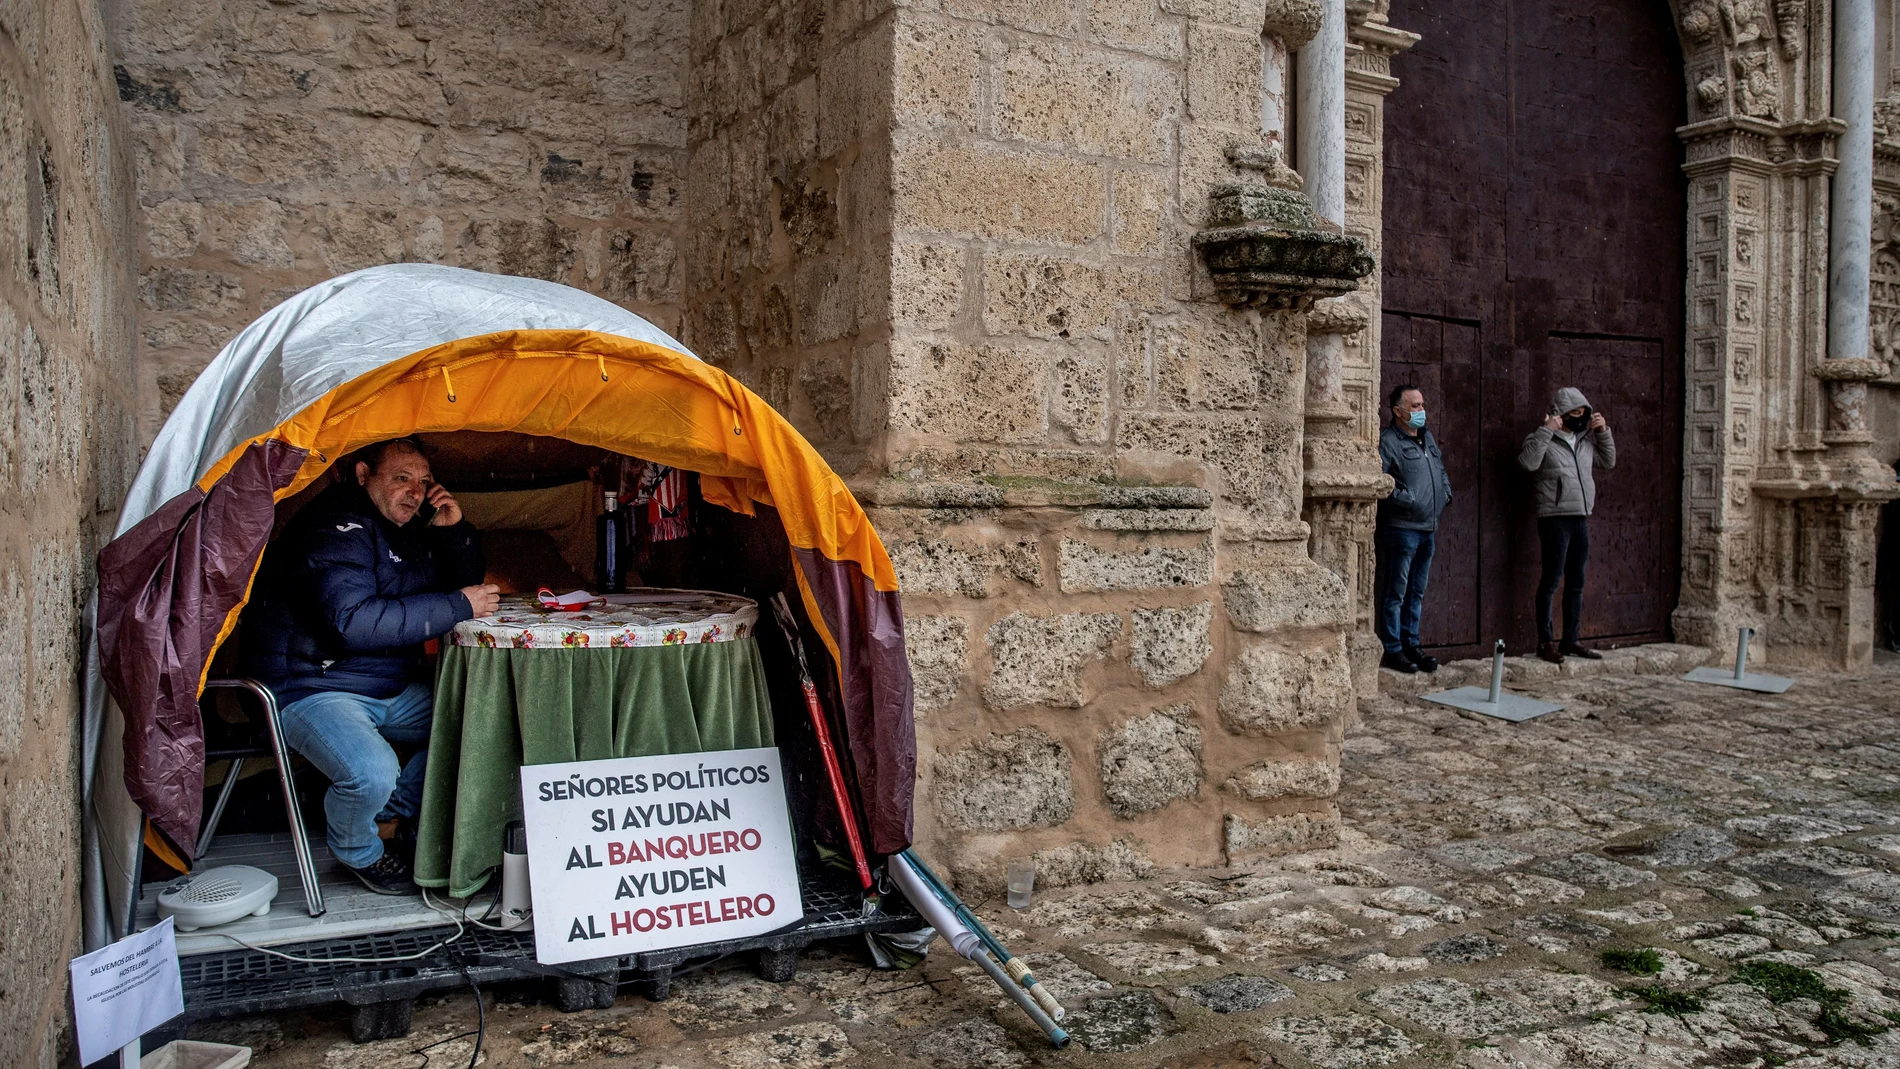 Alfonso Beltrán, tercera generación de hosteleros, mantiene una huelga de hambre en una tienda de campaña